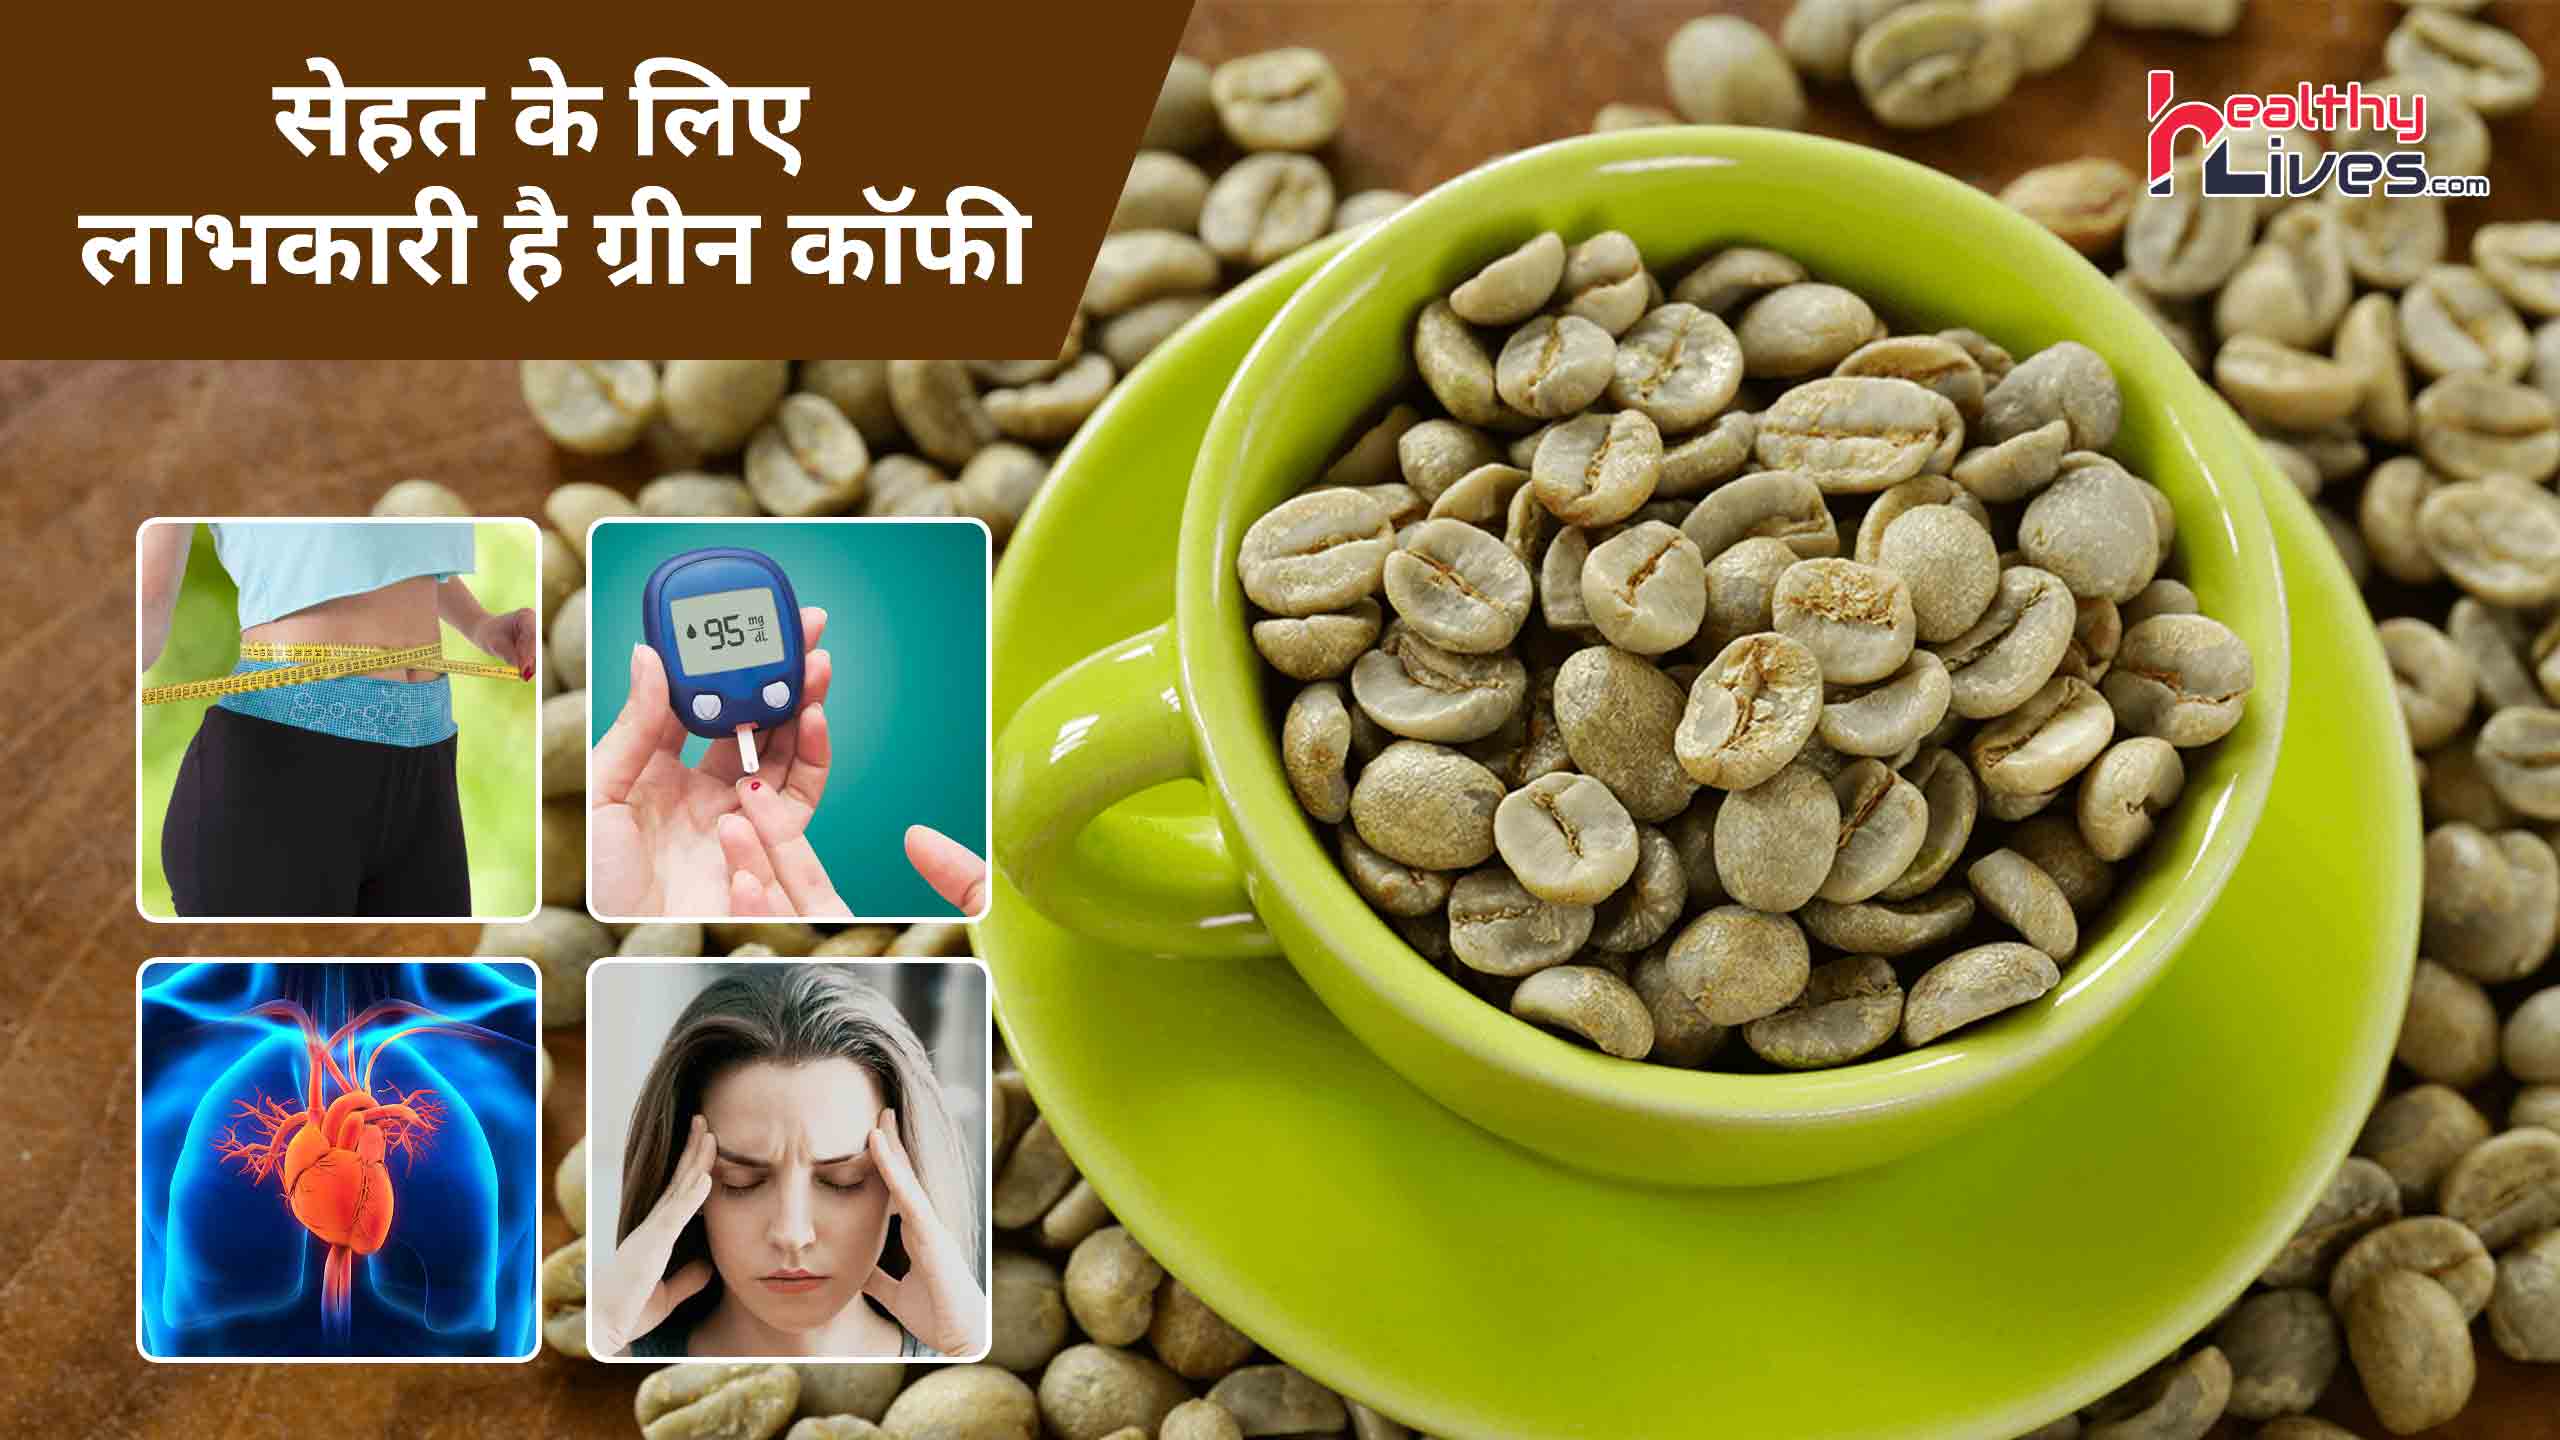 Green Coffee In Hindi: ग्रीन कॉफी में होते हैं कई पोषक तत्व, जाने इसके फायदे